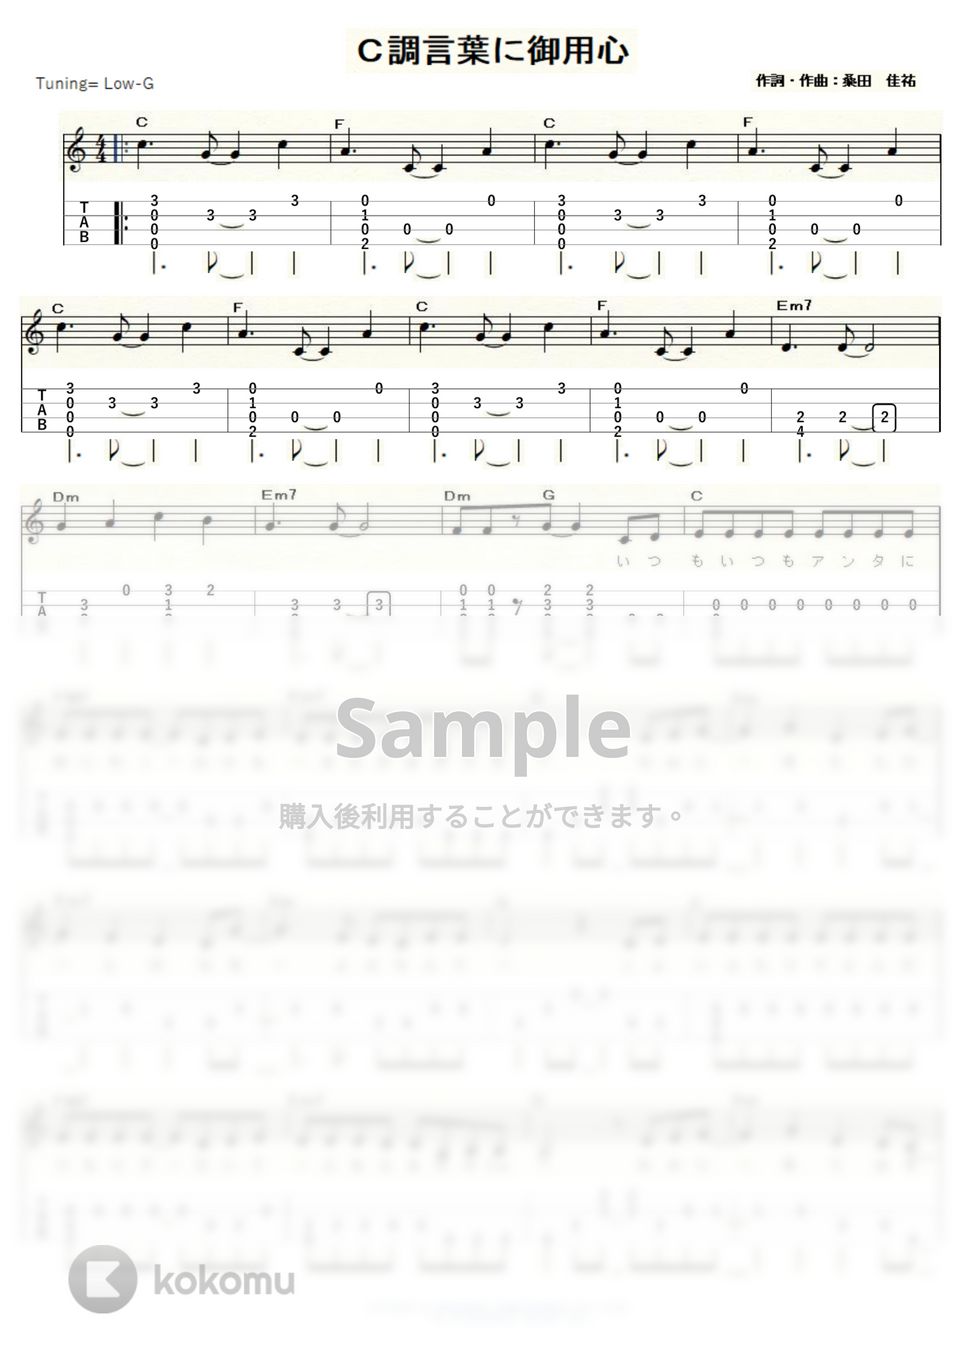 サザンオールスターズ - Ｃ調言葉に御用心 (ｳｸﾚﾚｿﾛ / Low-G / 中級) by ukulelepapa